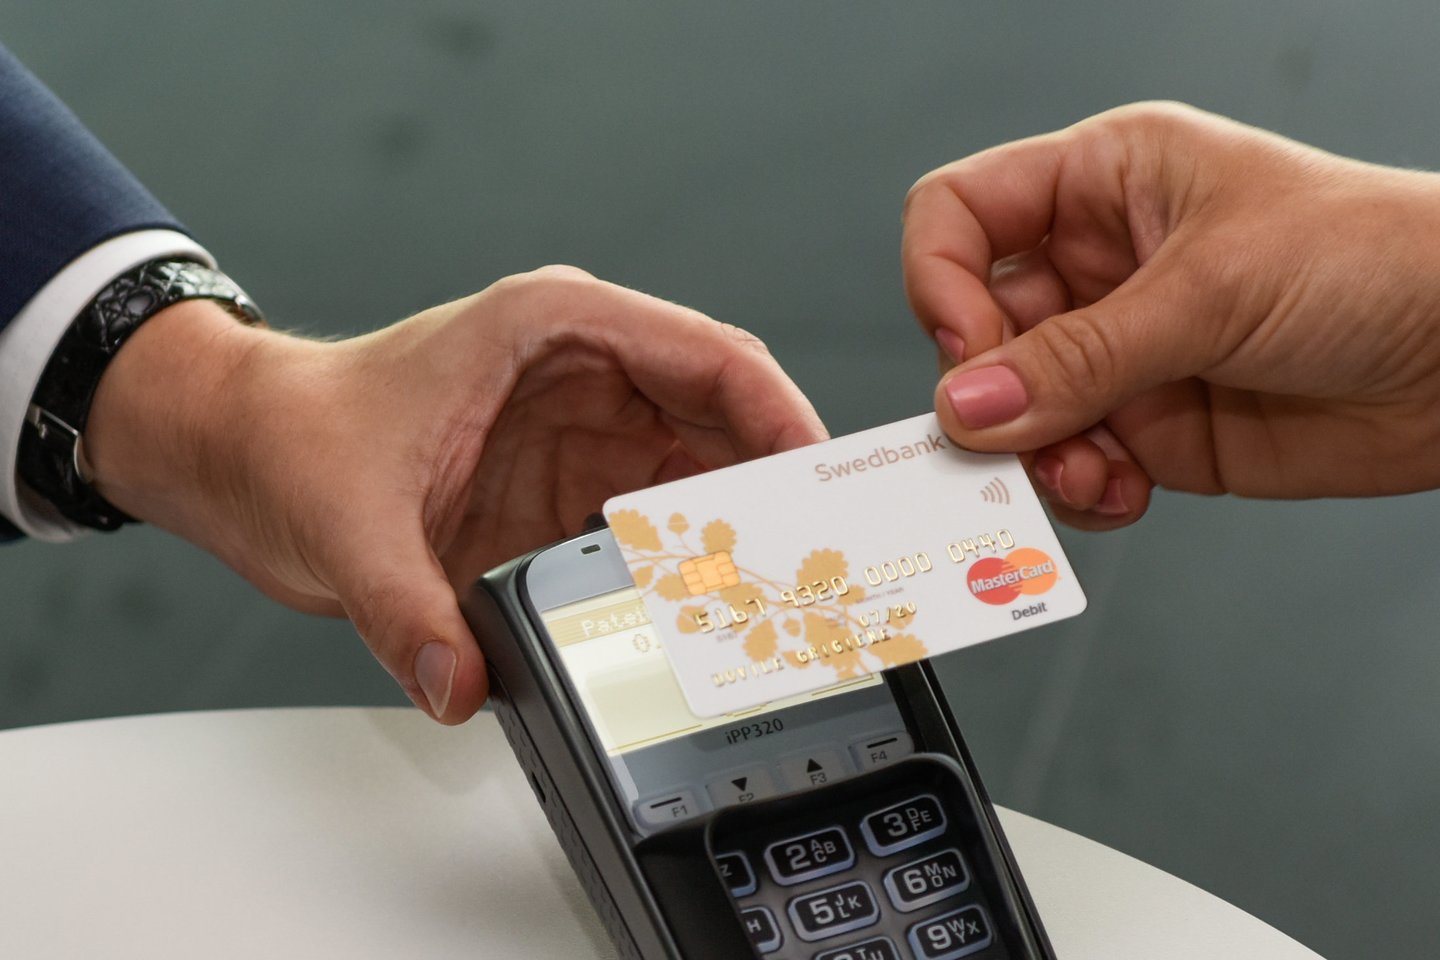 swedbank pristatė naujas mokėjimo korteles, be kontaktė kortelė<br>D.Umbraso nuotr.